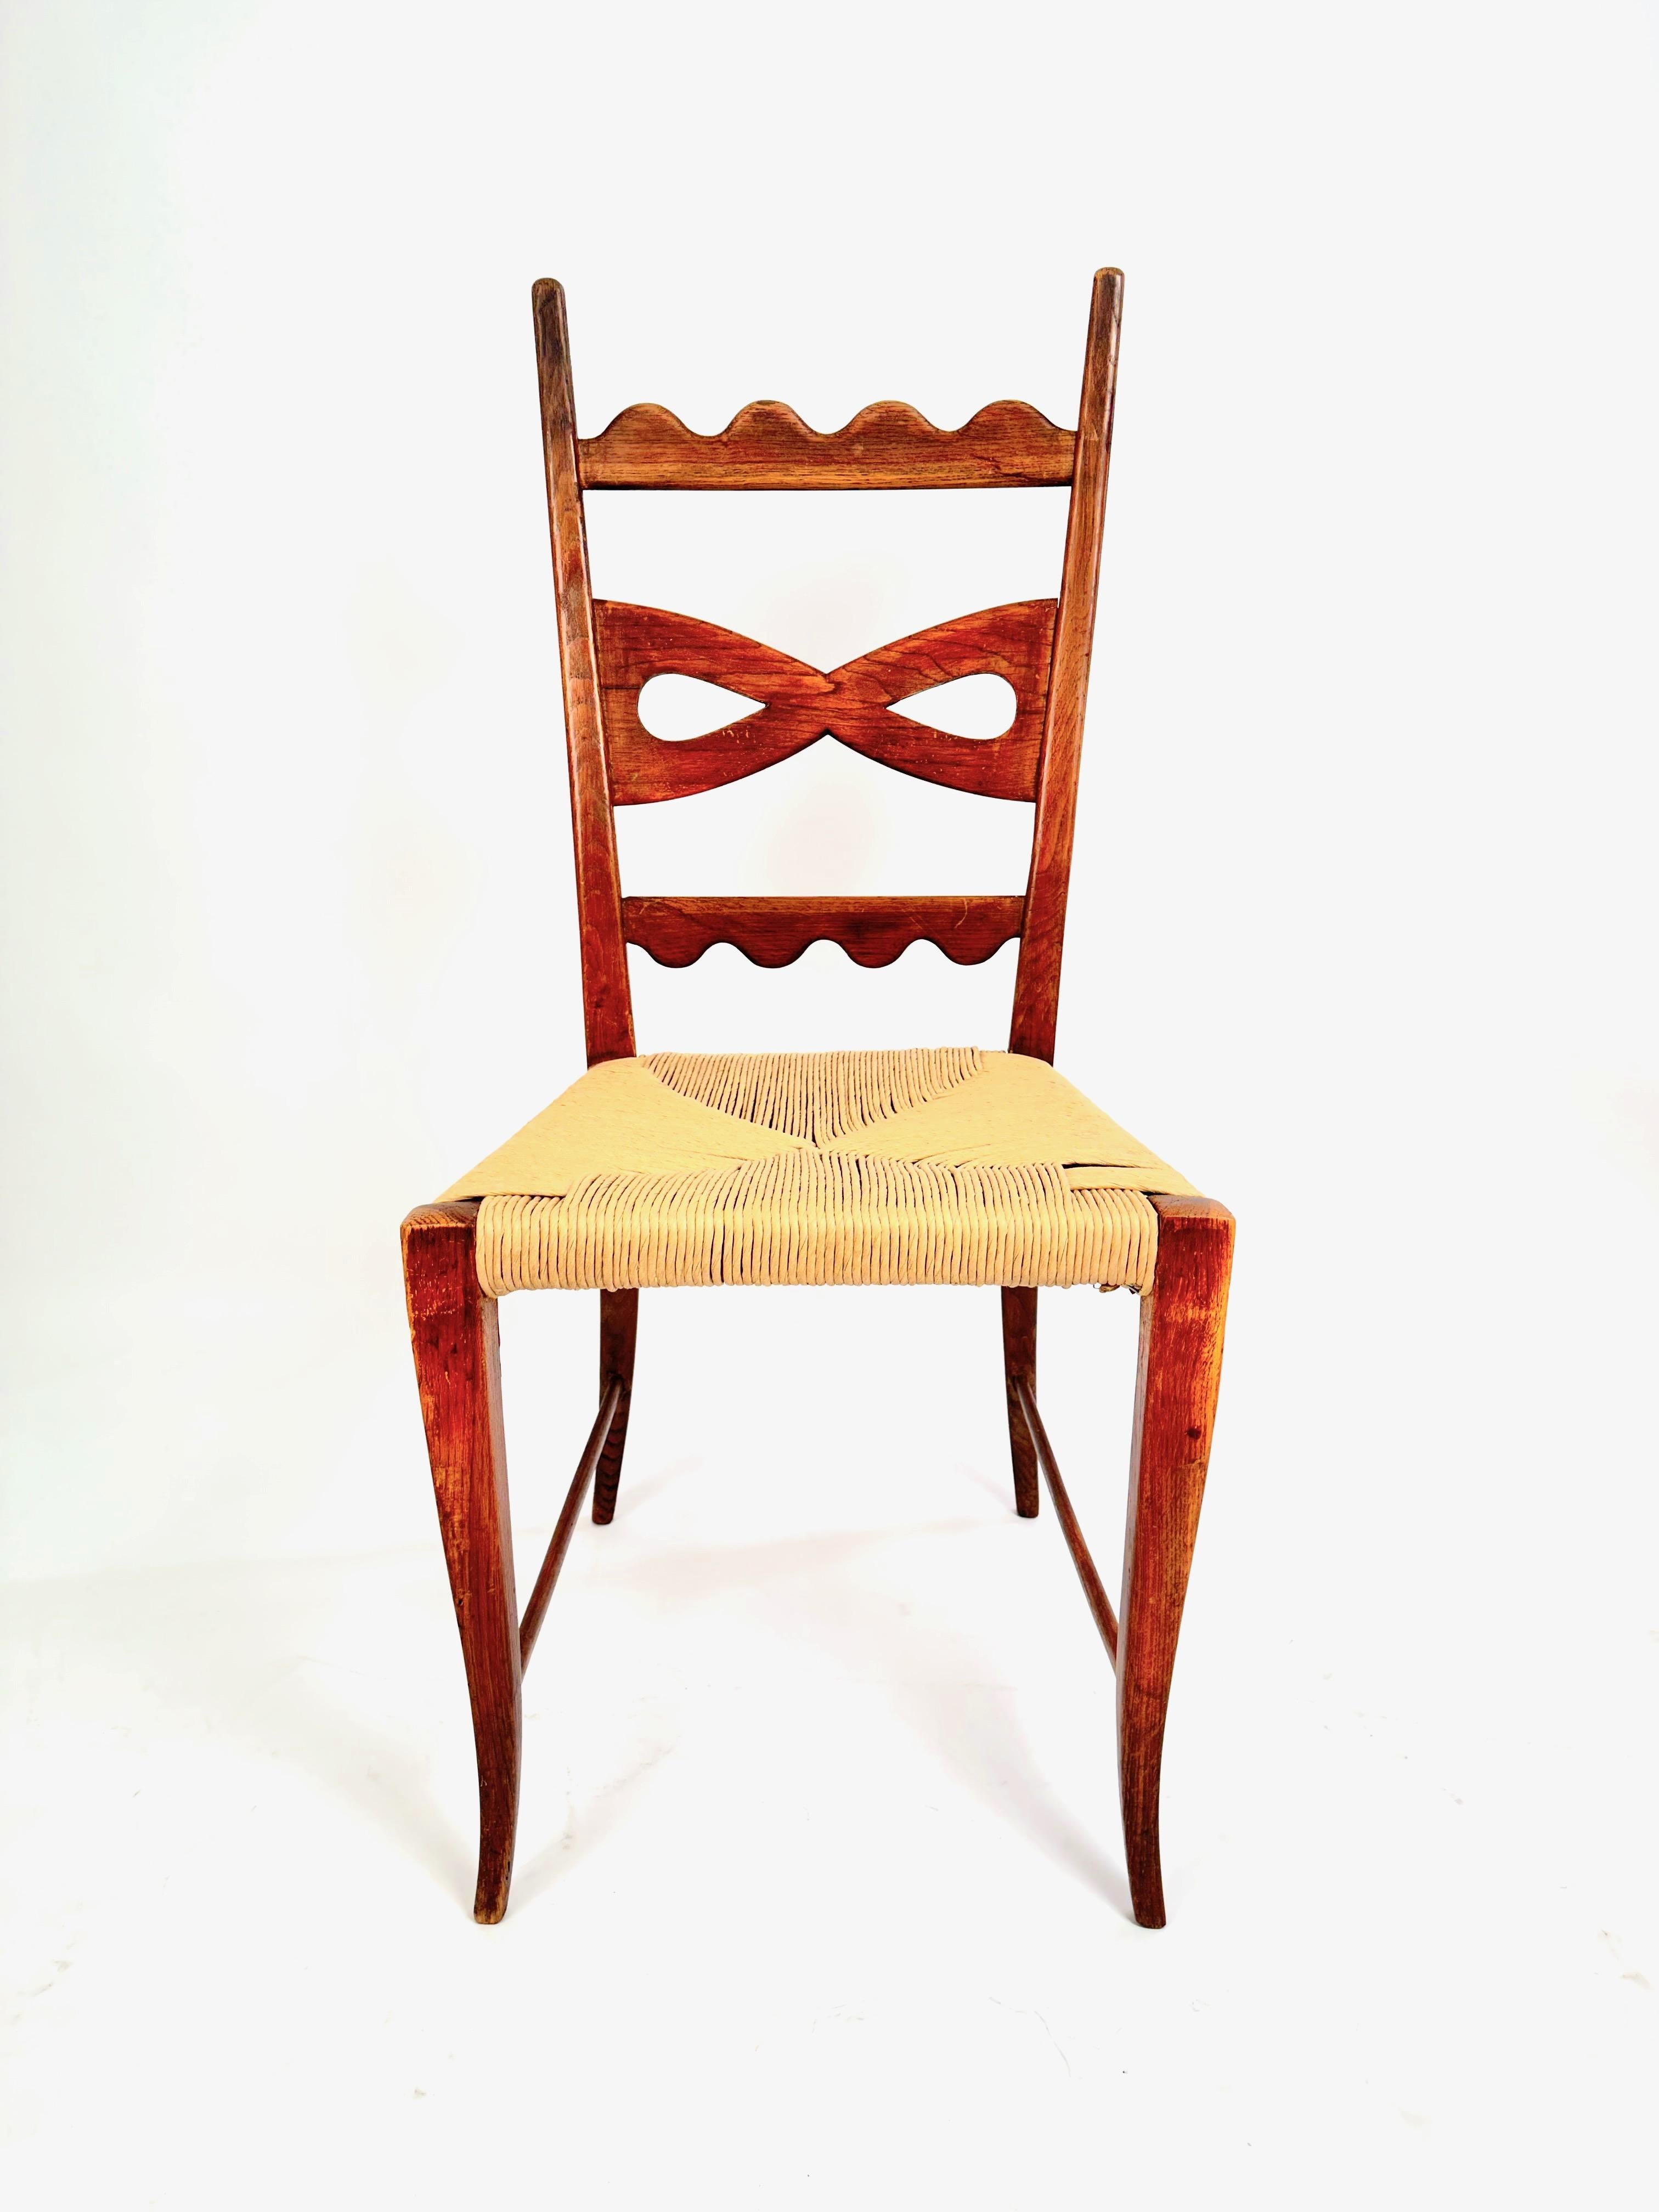 Ein seltenes Set von sechs Esszimmerstühlen, entworfen von Paolo Buffa in den 1940er Jahren, mit den für Buffa typischen Details wie den dekorativen Bogen- und Wellenmustern auf den Rückenlehnen, den geschnitzten Ringmustern auf den Vorderbeinen,